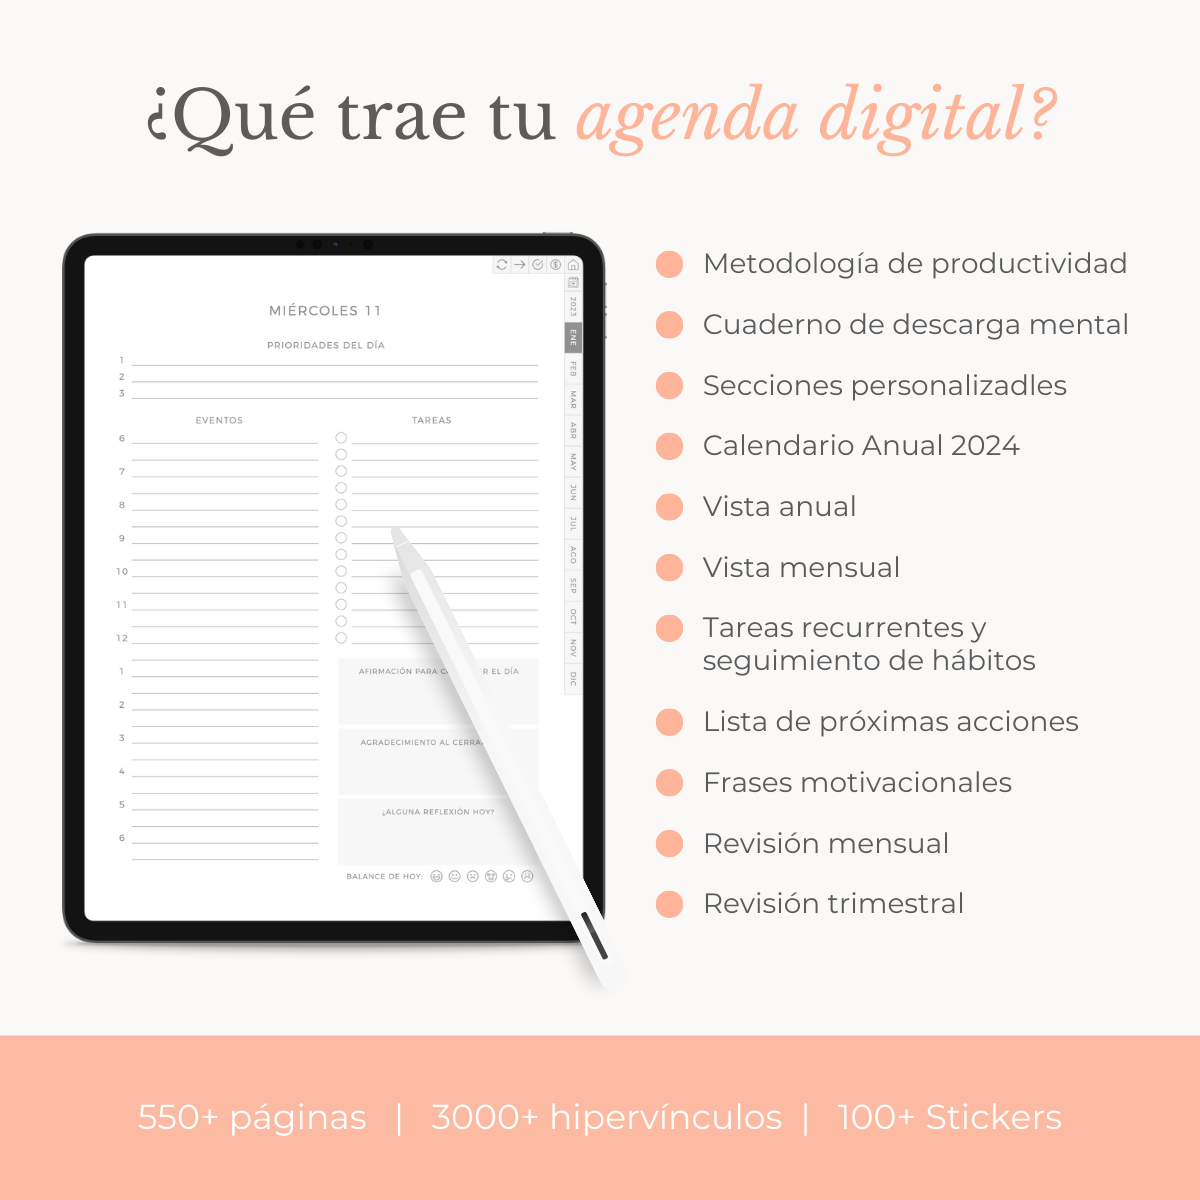 Agenda Calma Digital – PaulaVicedo